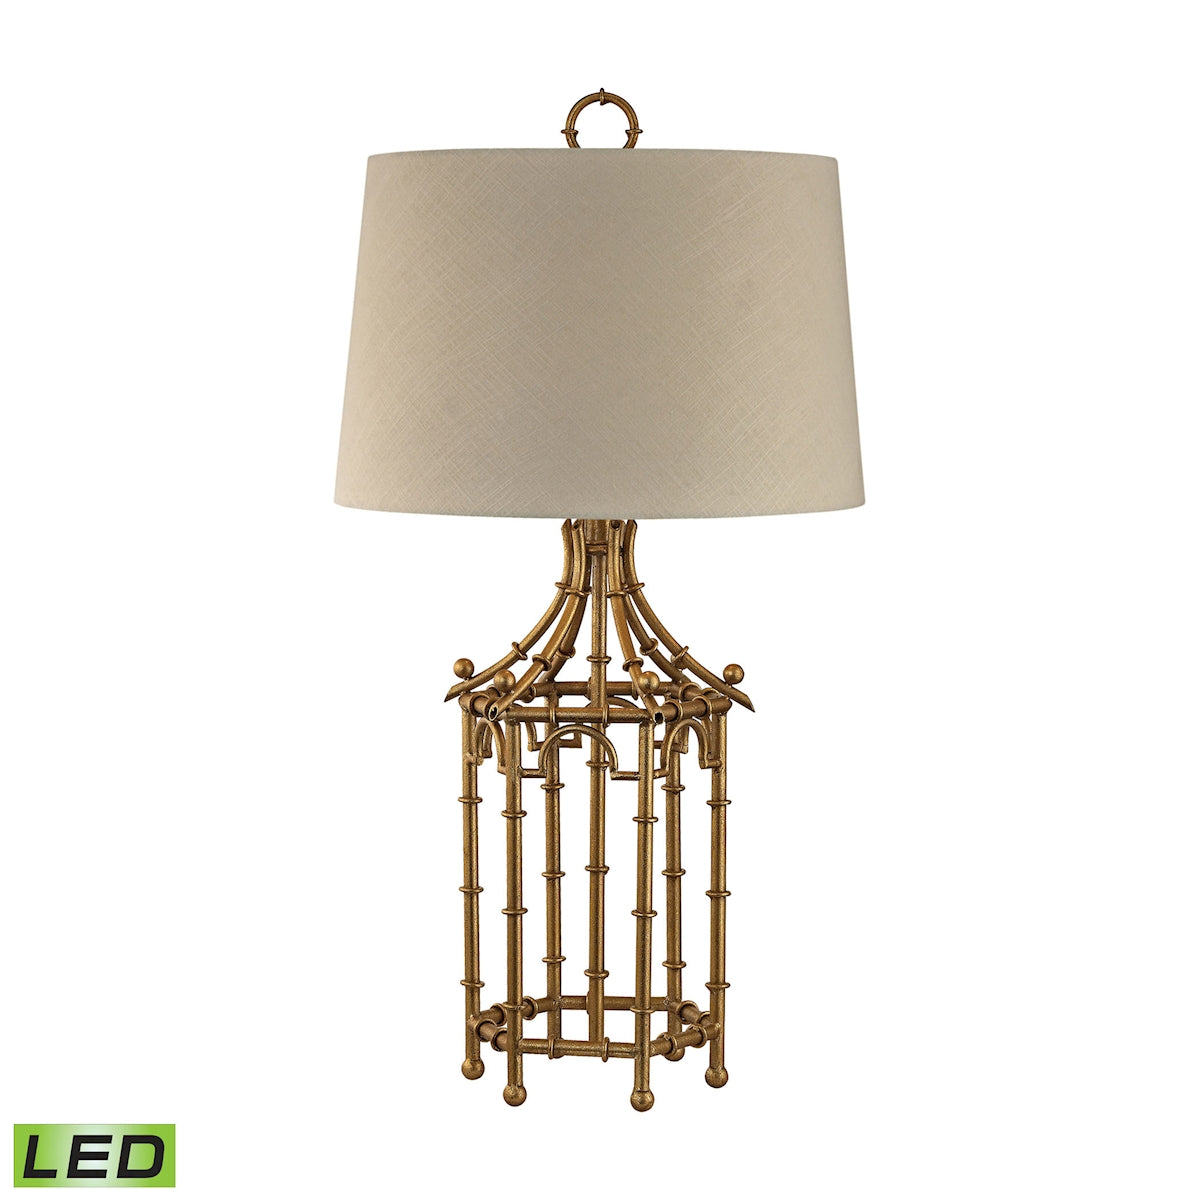 ELK Home - D2864-LED - LED Table Lamp - Bamboo Birdcage - Gold Leaf